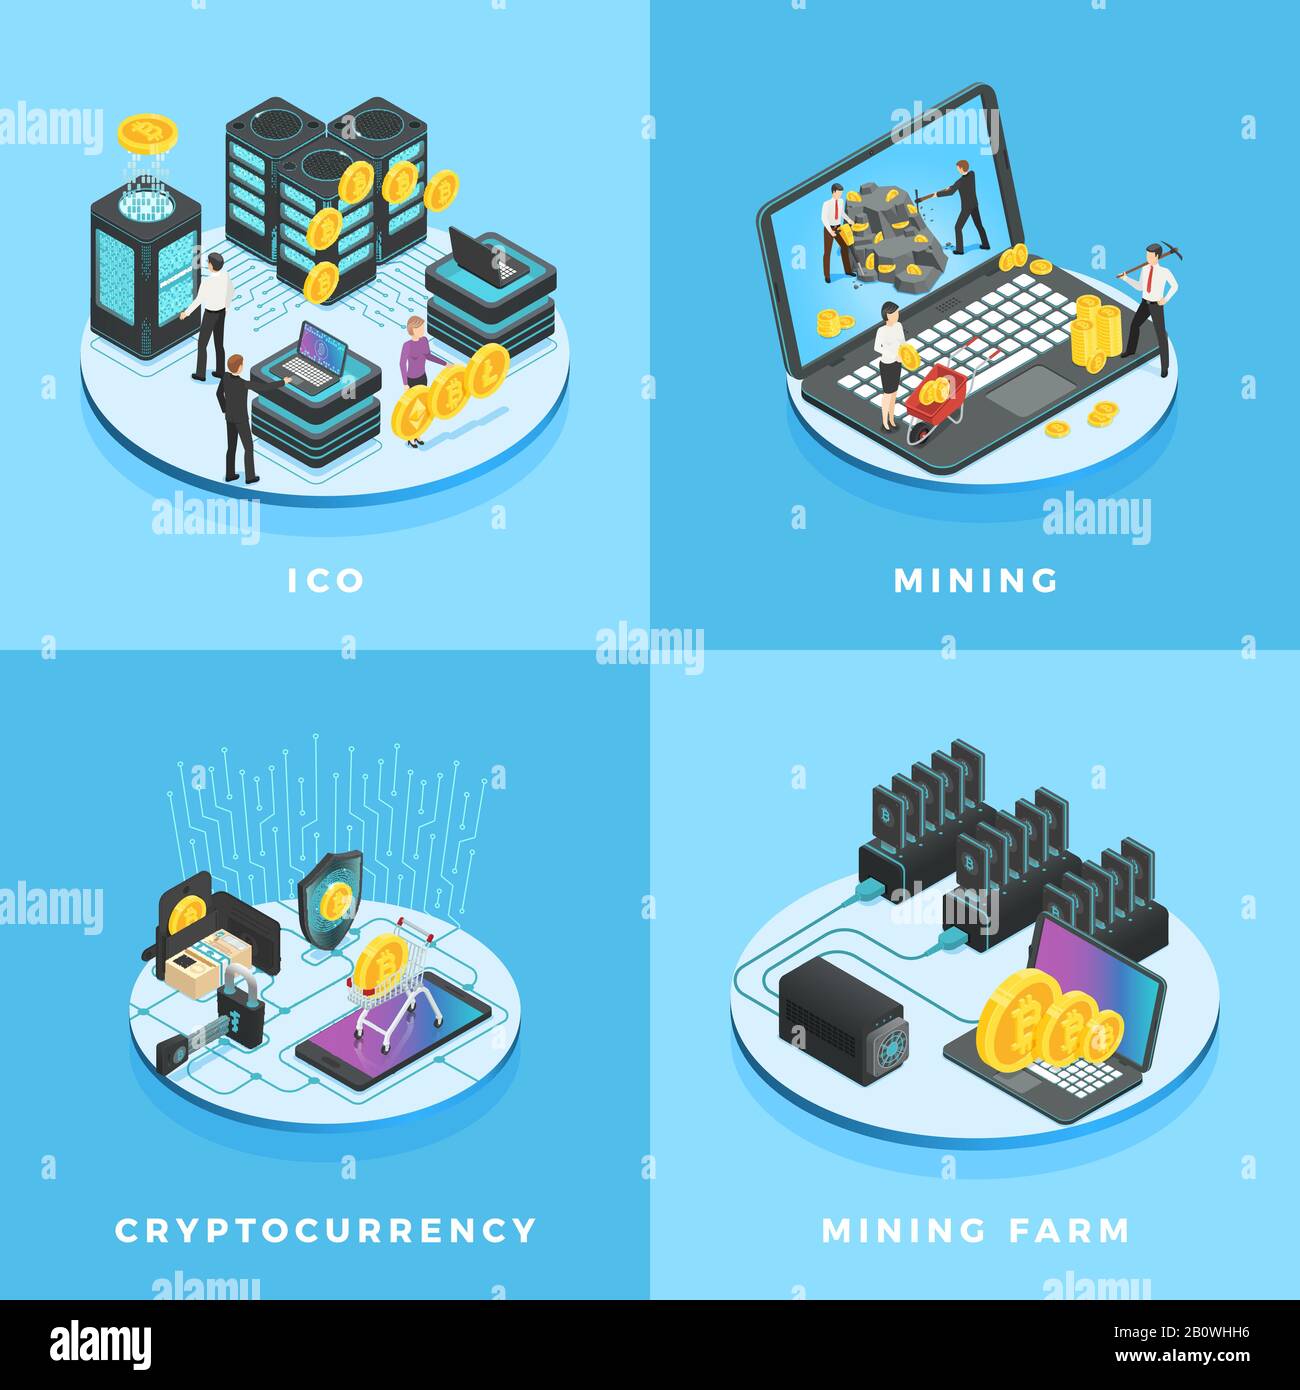 Kryptokurrency Illustration. Elektronisches Geld, Währungsabbau, ICO und Blockchain Computer Netzwerk isometrische Vektordarstellung Stock Vektor